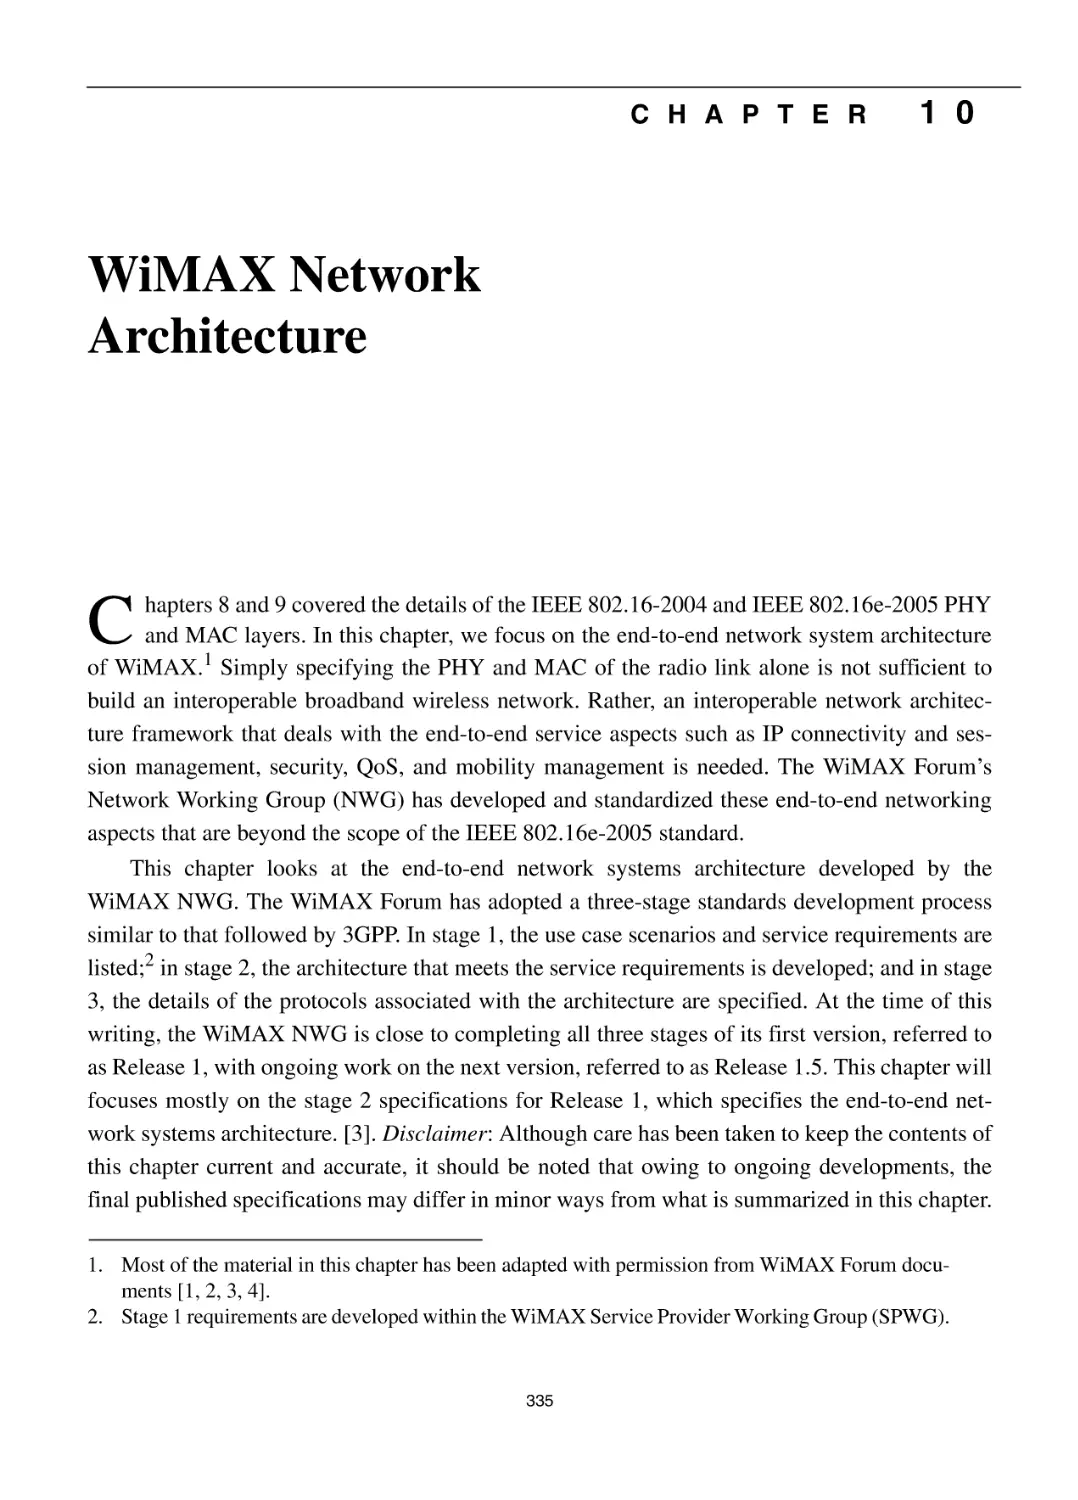 10 WiMAX Network Architecture